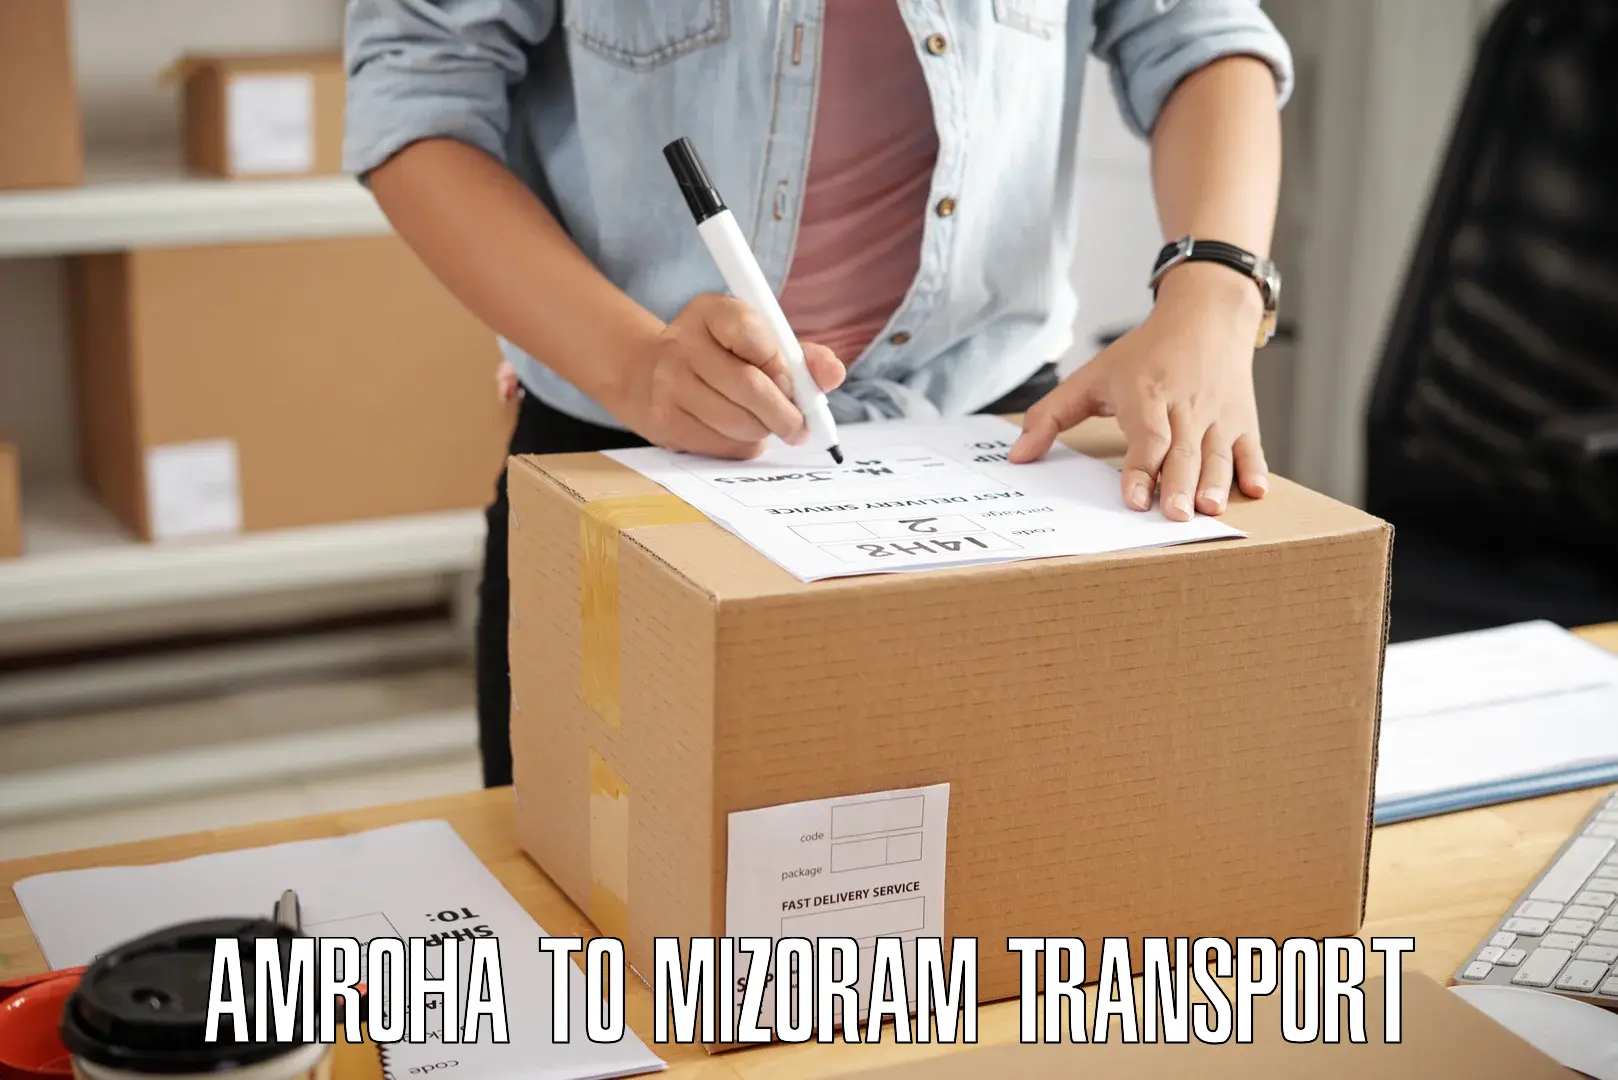 Daily transport service Amroha to Mizoram University Aizawl